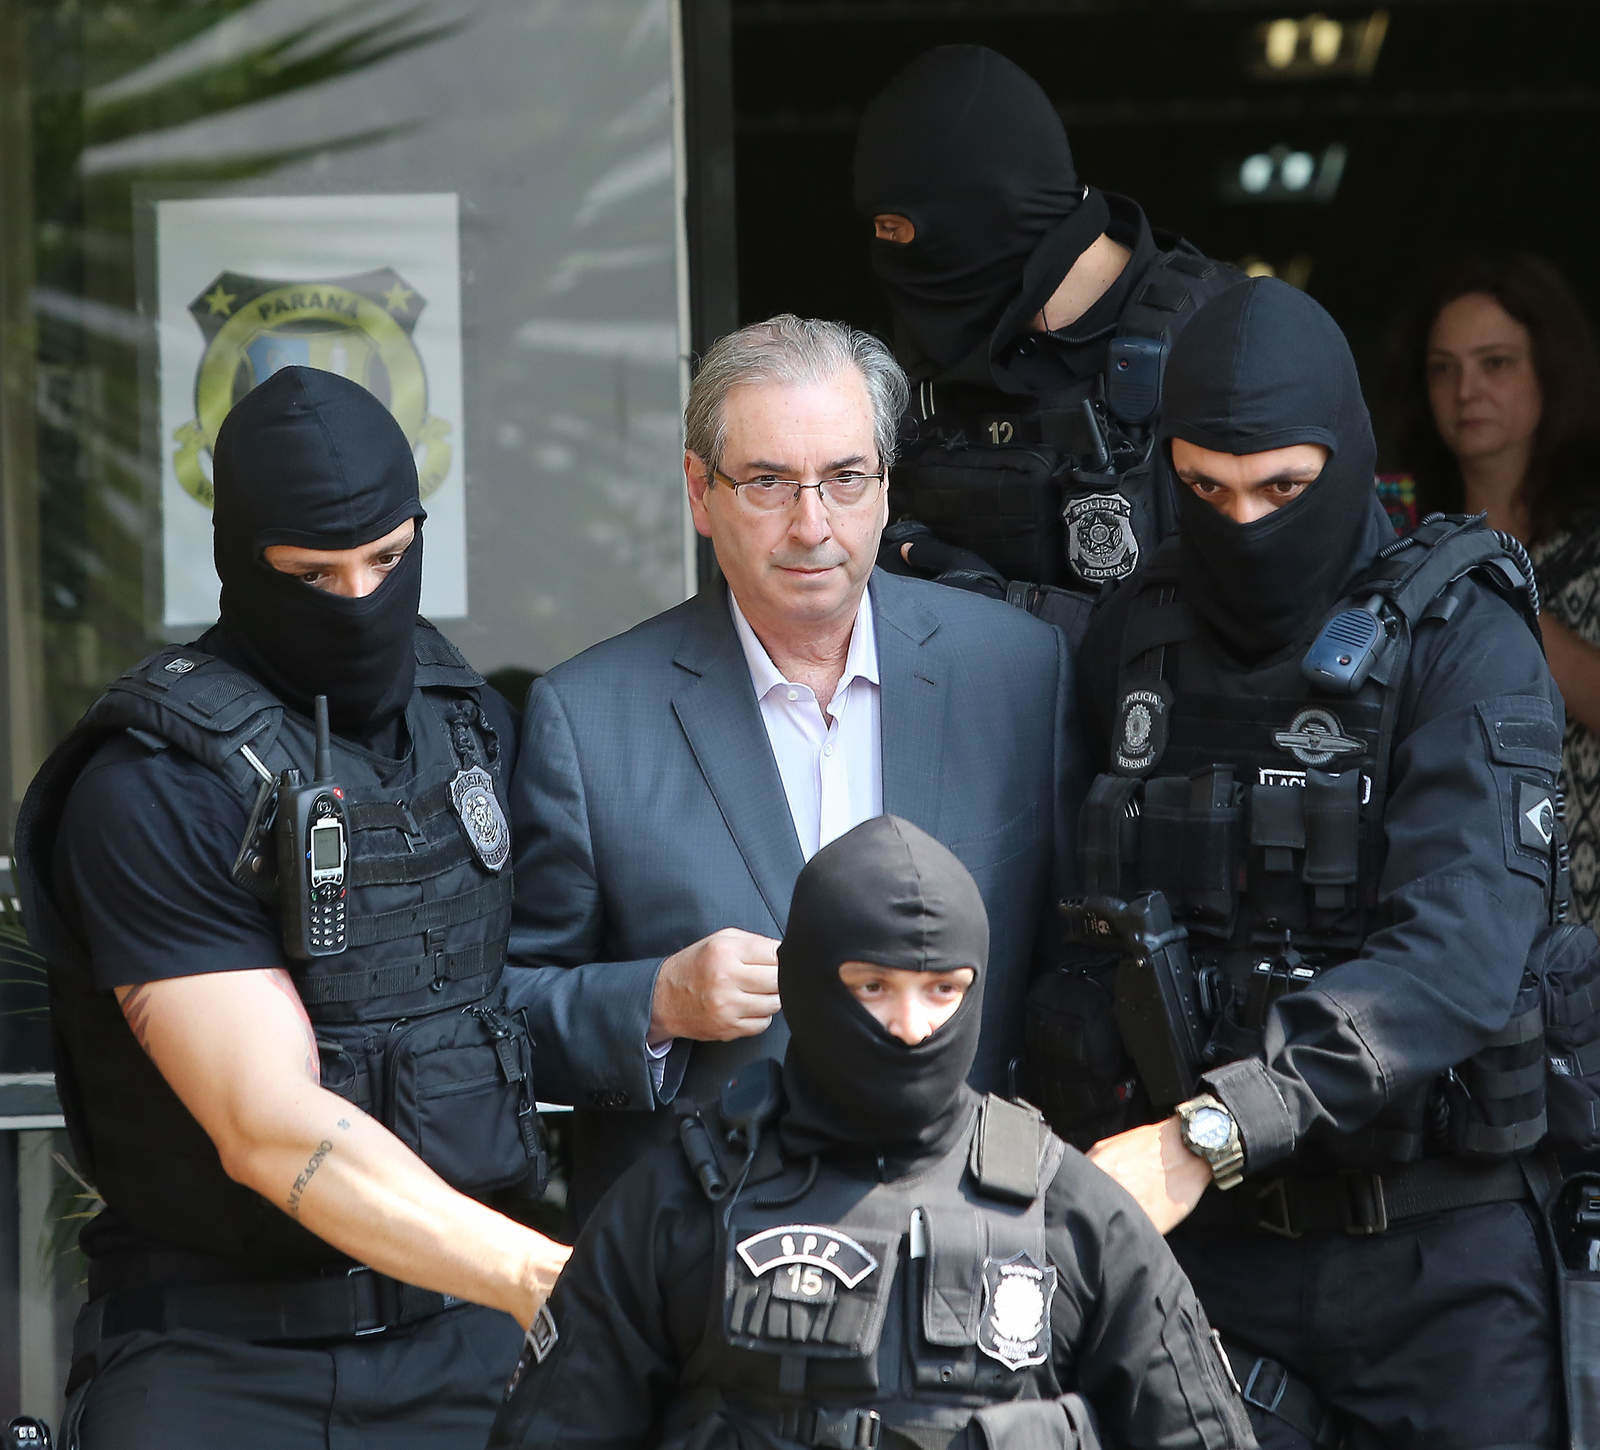 O presidente cassado da Câmara dos Deputados, Eduardo Cunha (PMDB-RJ), que foi preso dia 19.10, deixa o IML após realizar corpo de delito (Giuliano Gomes/Folhapress)